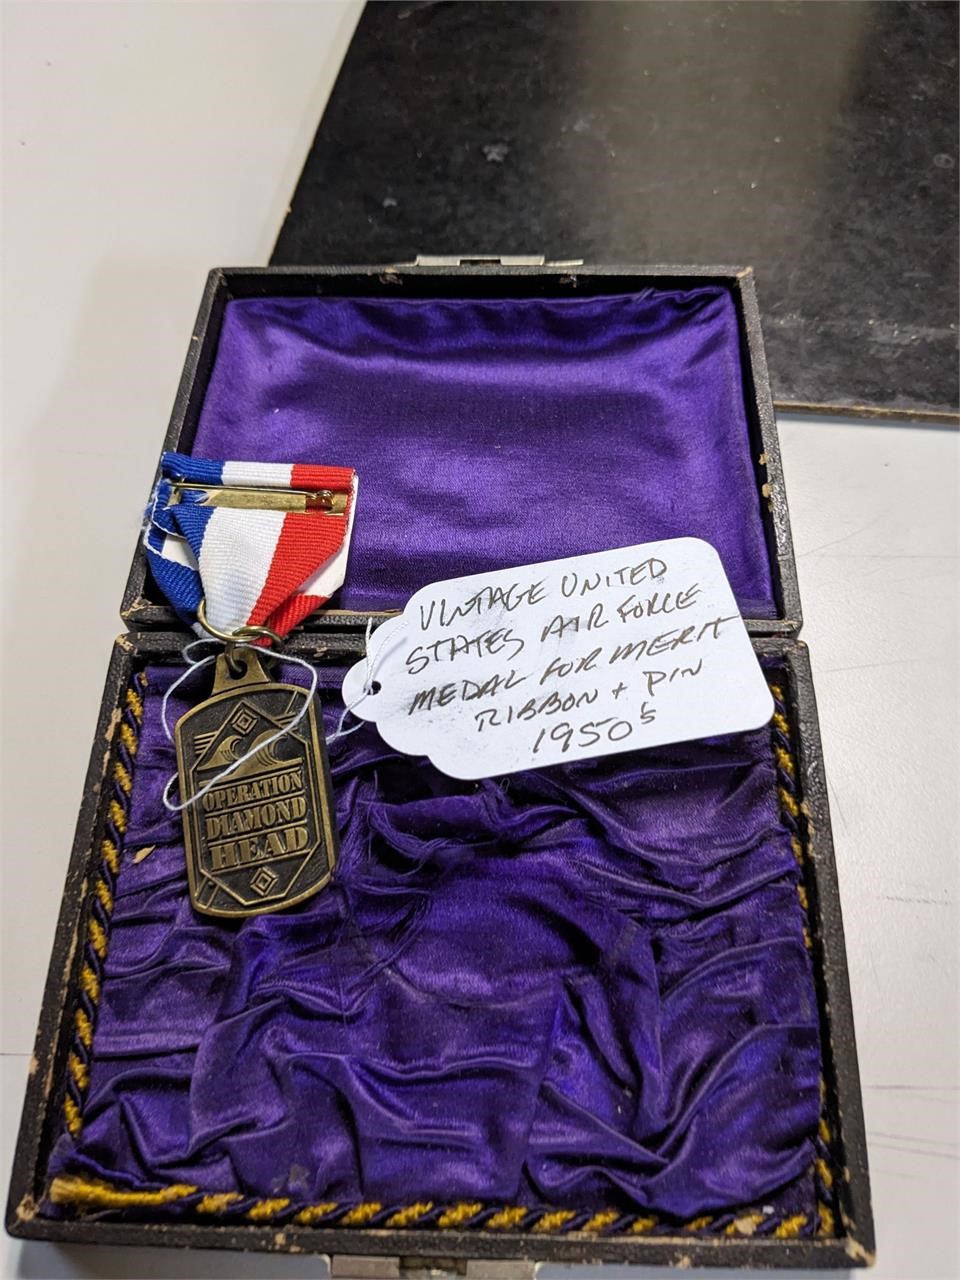 VTG US Airforce Medal for Merit Ribbon & Pin